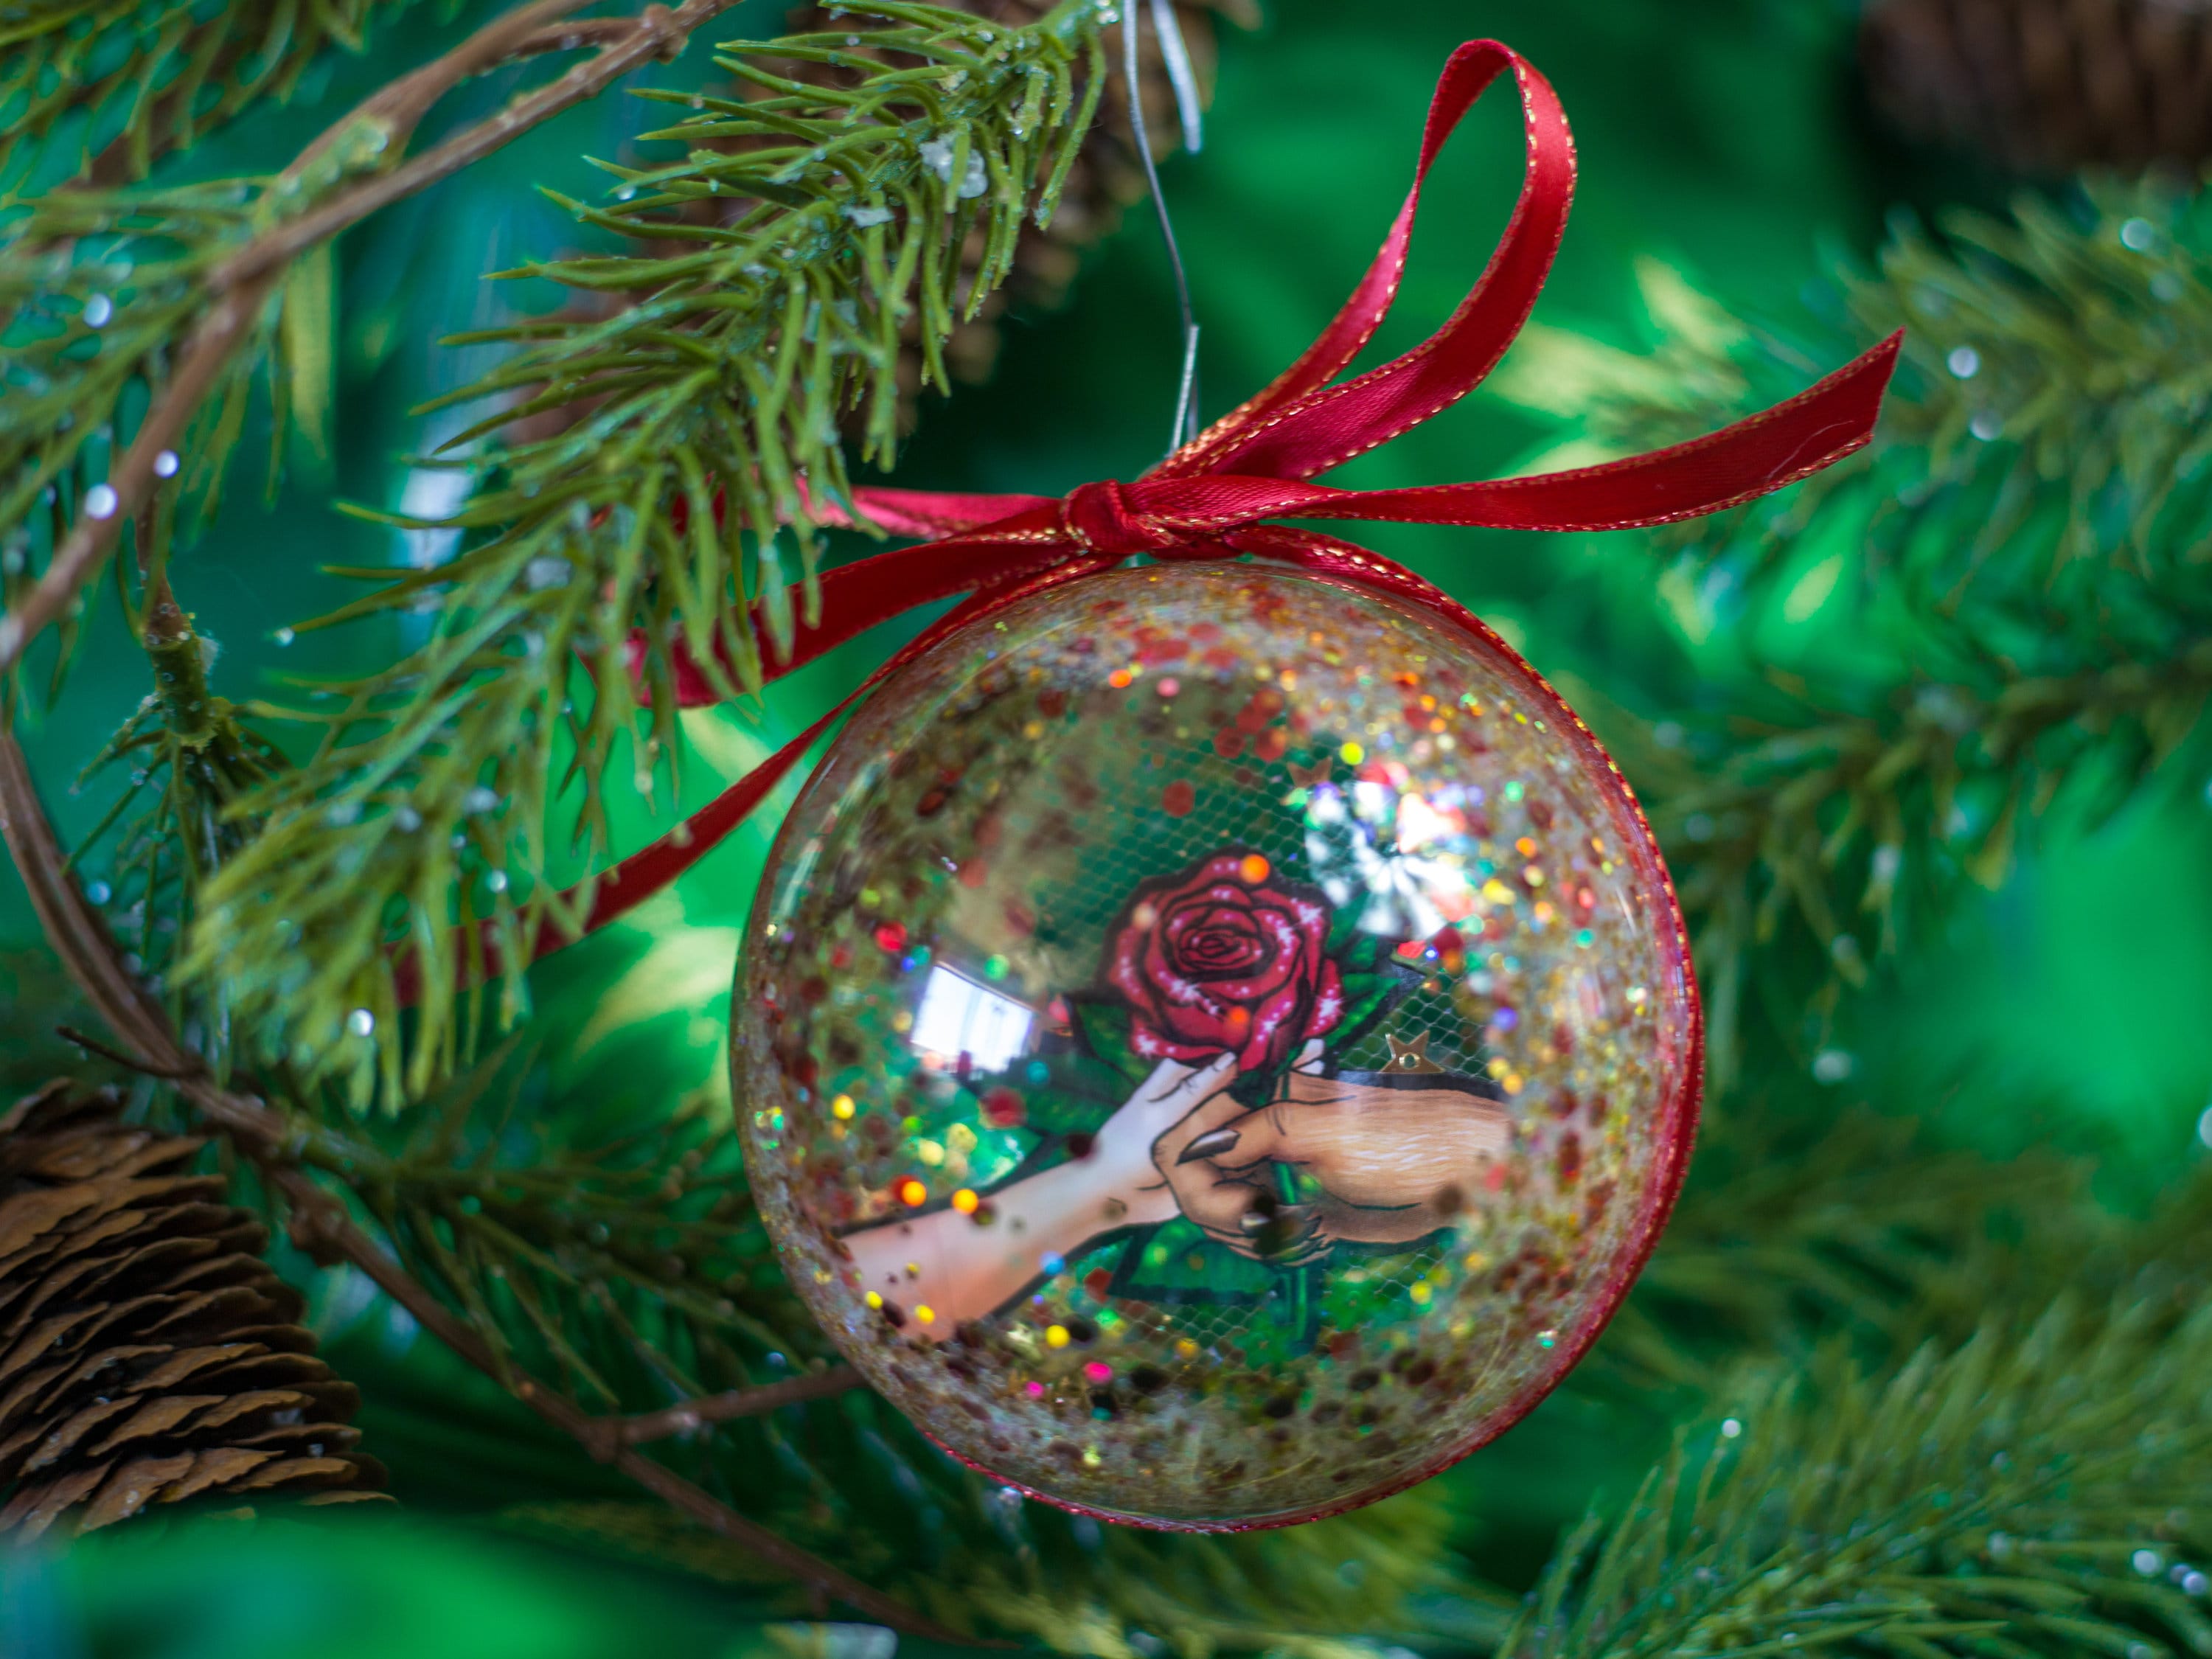 Kailya Glittered Christmas Tree Topper Star Baubles Christmas Tree Decorations Gift Bauble Christmas Ornament #1